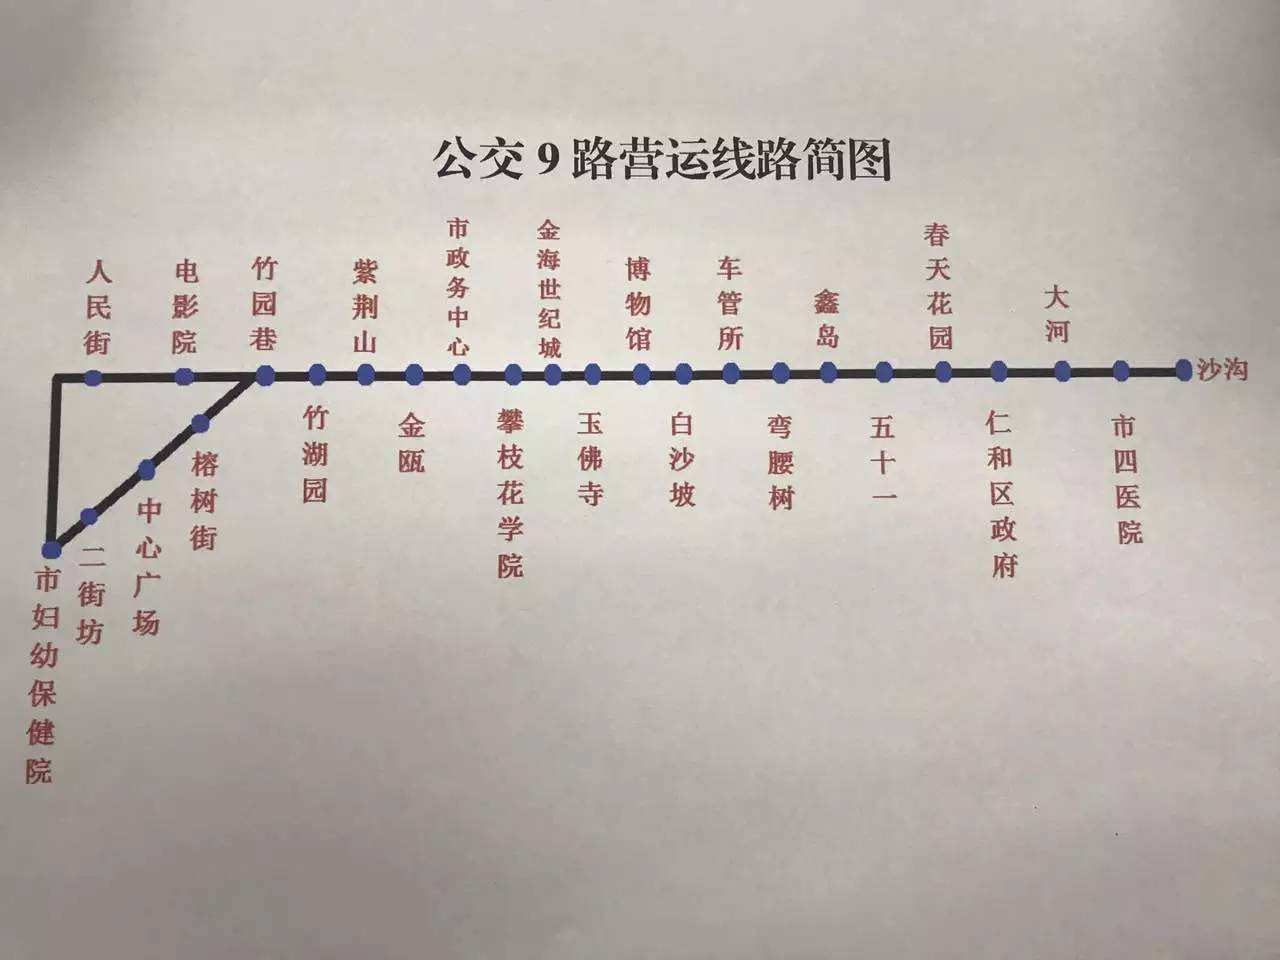 9路公交车道路图(桃江9路车颠末道路)